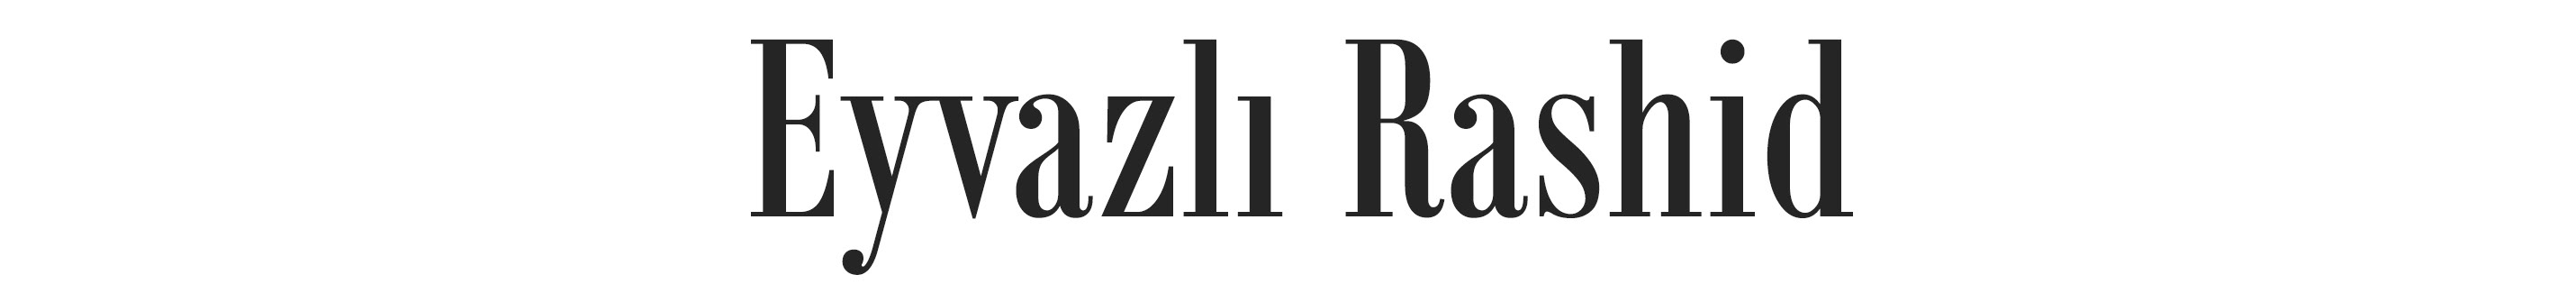 Rashid Eyvazlı's profile banner